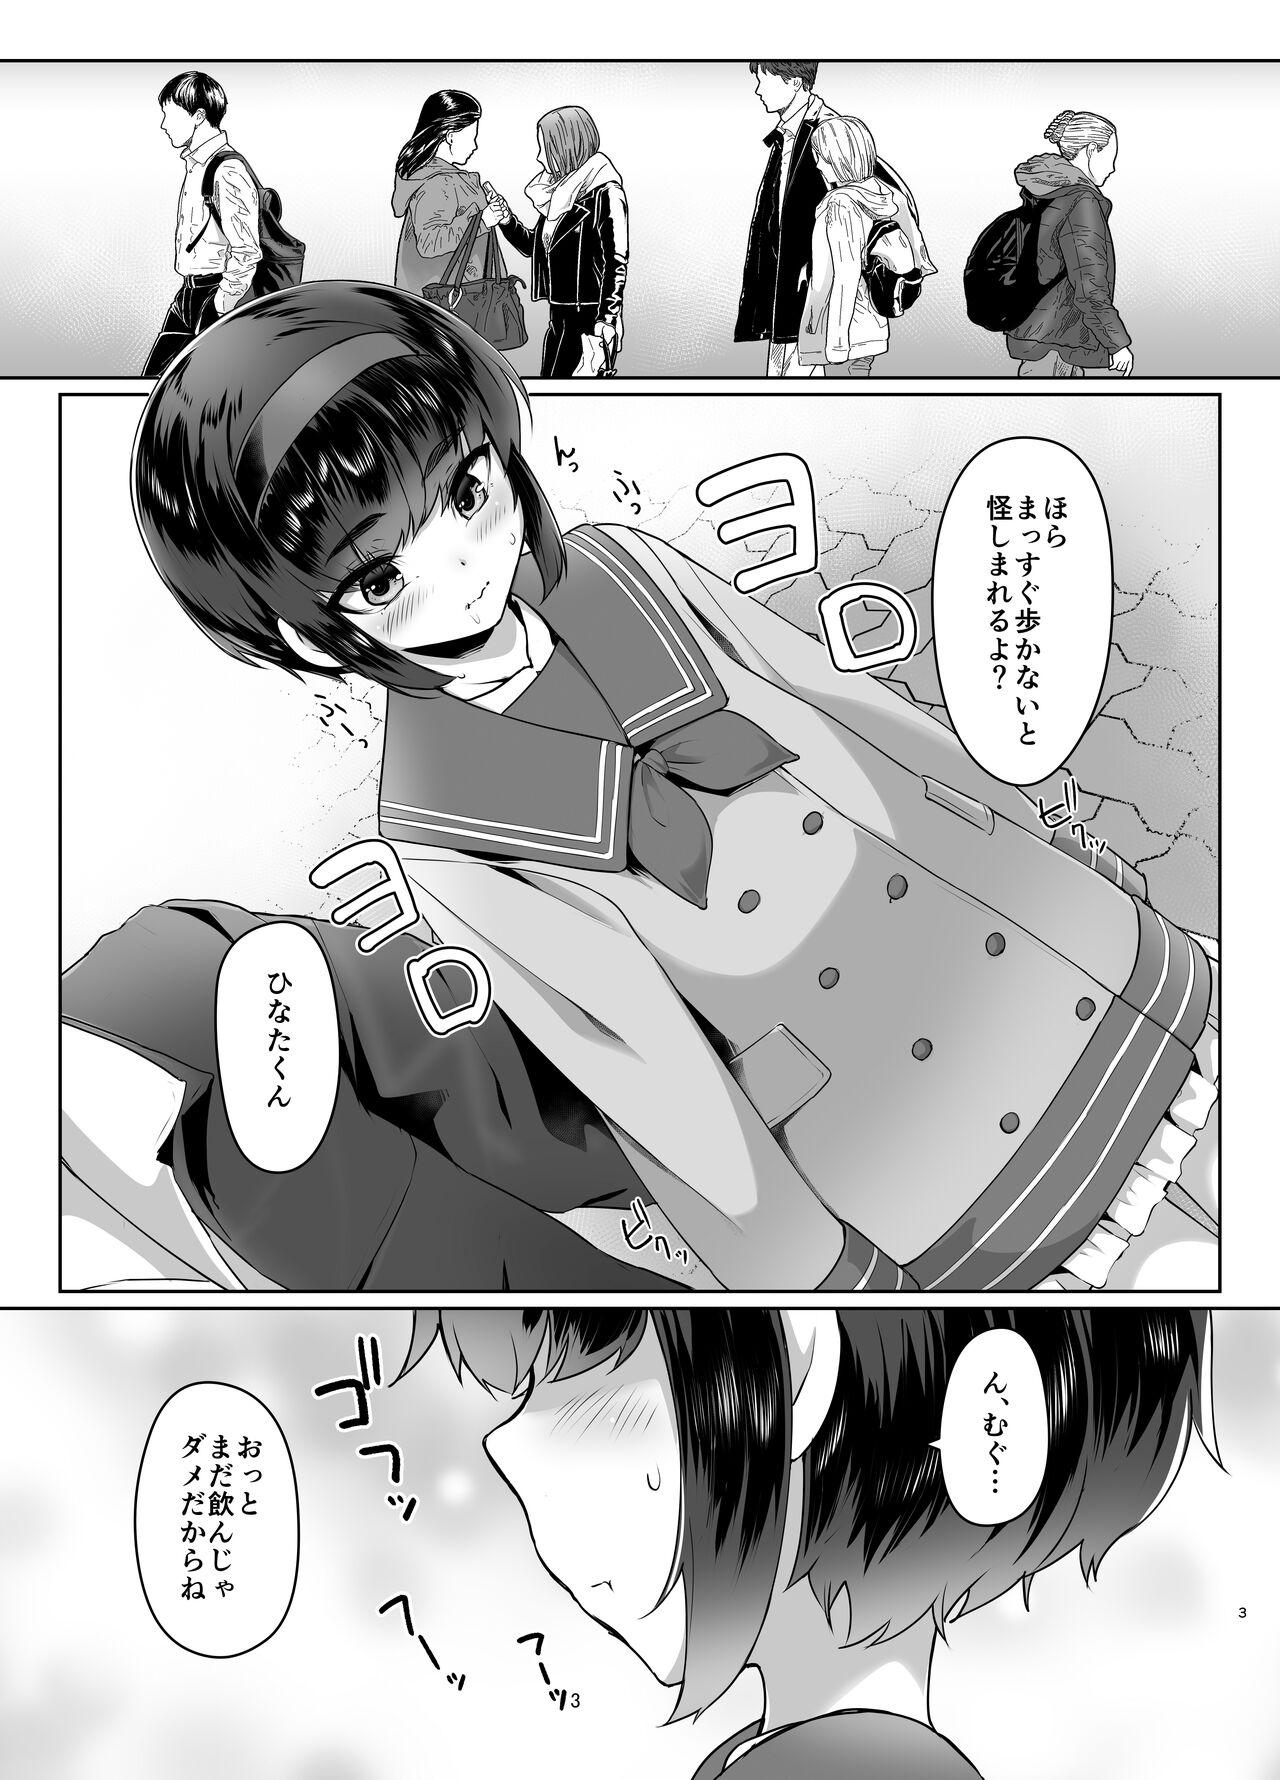 Chudai Tooi Hinata 2 8teenxxx - Page 2